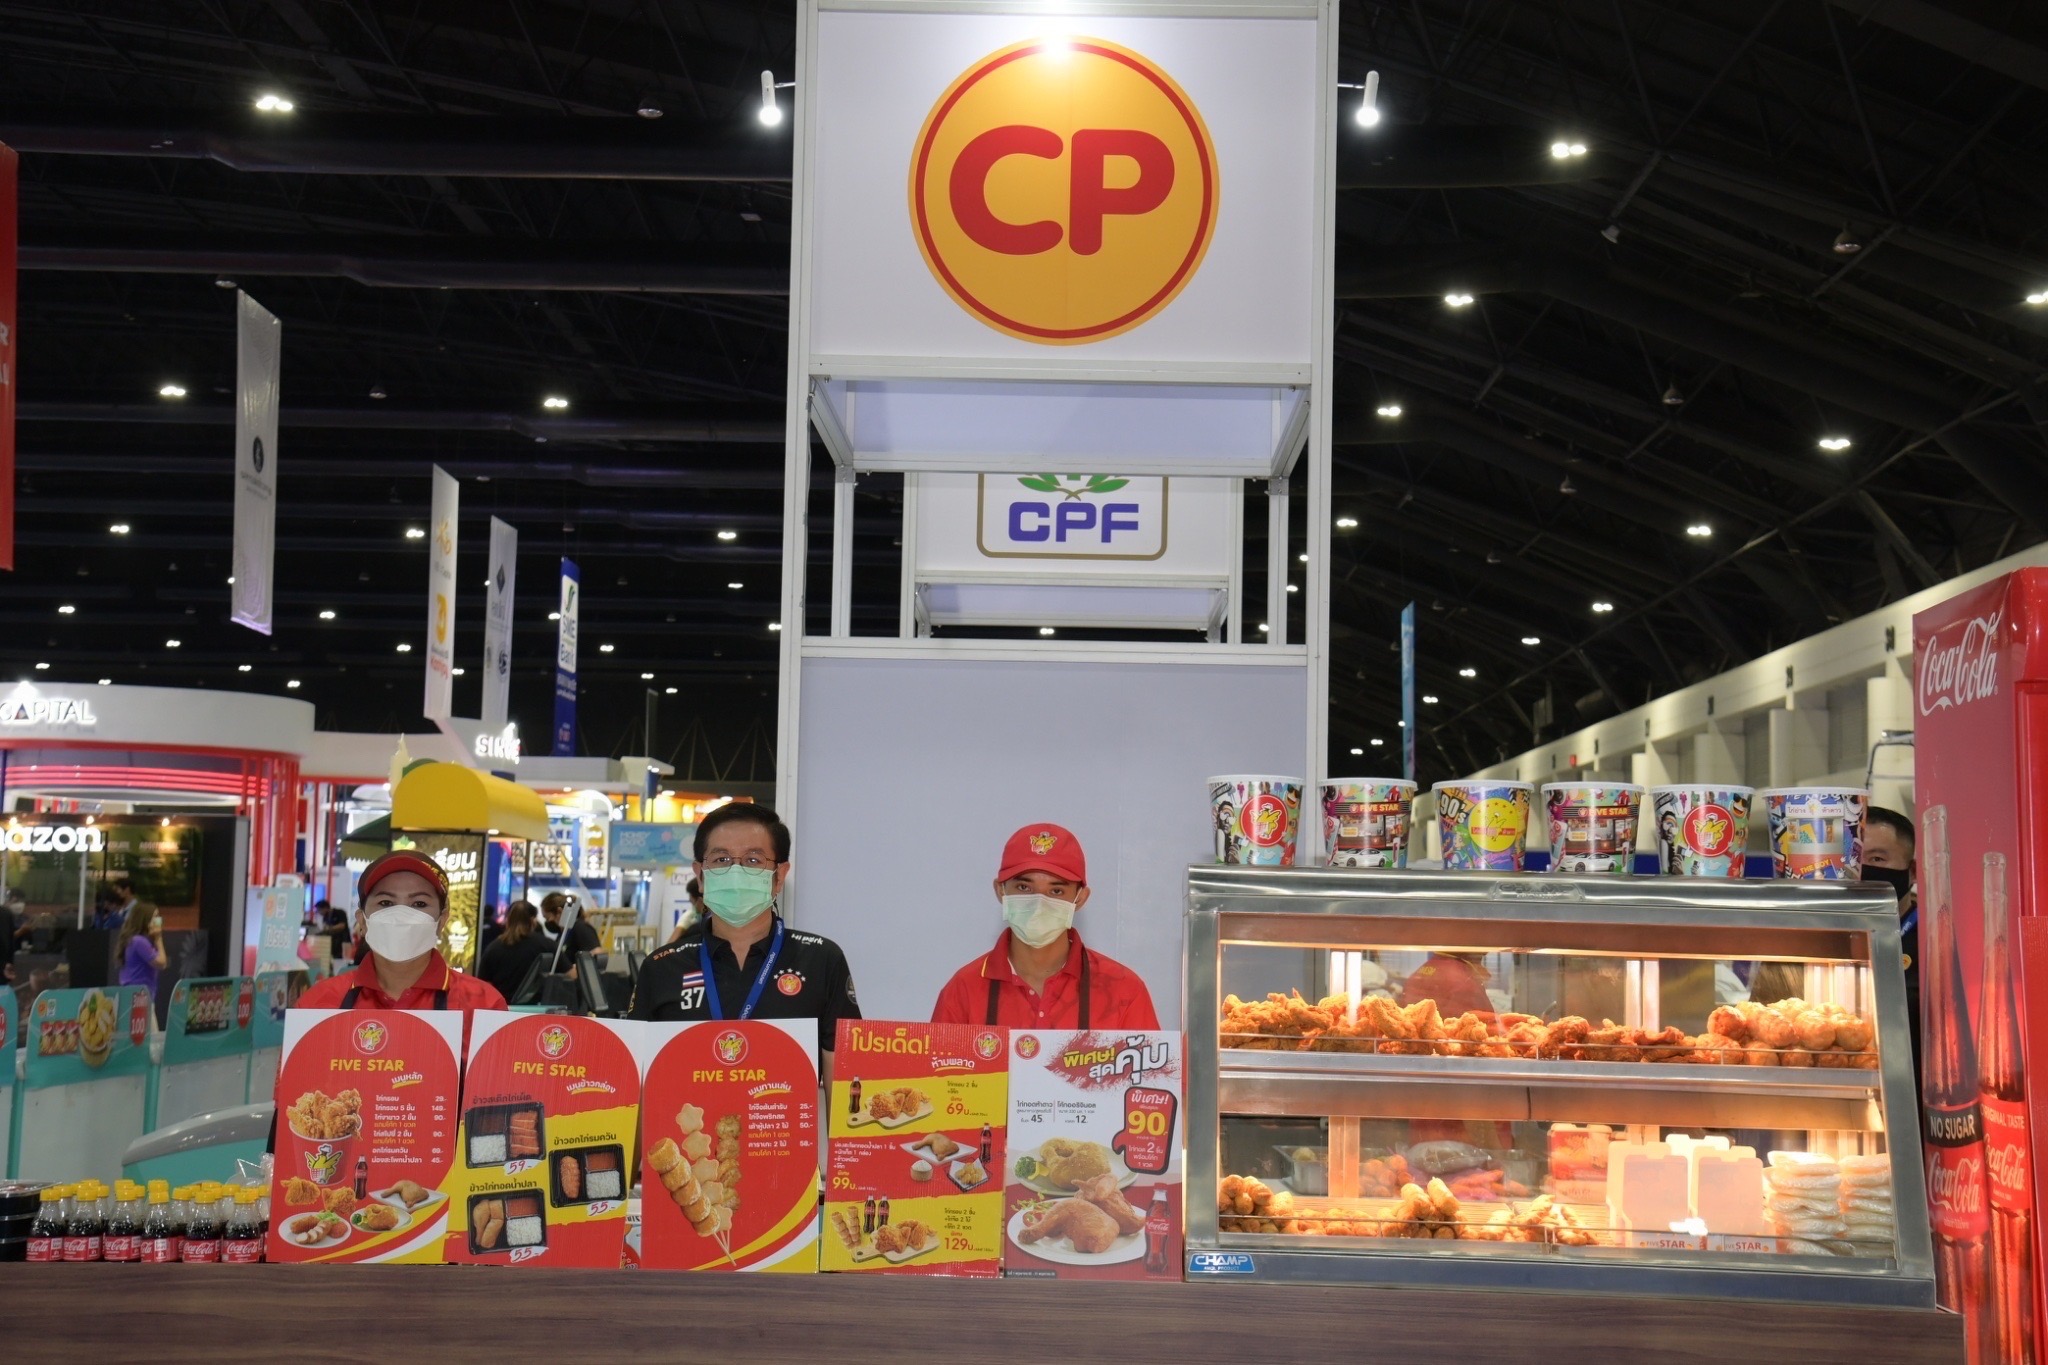 ซีพีเอฟ ยกขบวนผลิตภัณฑ์อาหารคุณภาพ งานมหกรรมการเงิน ครั้งที่ 22